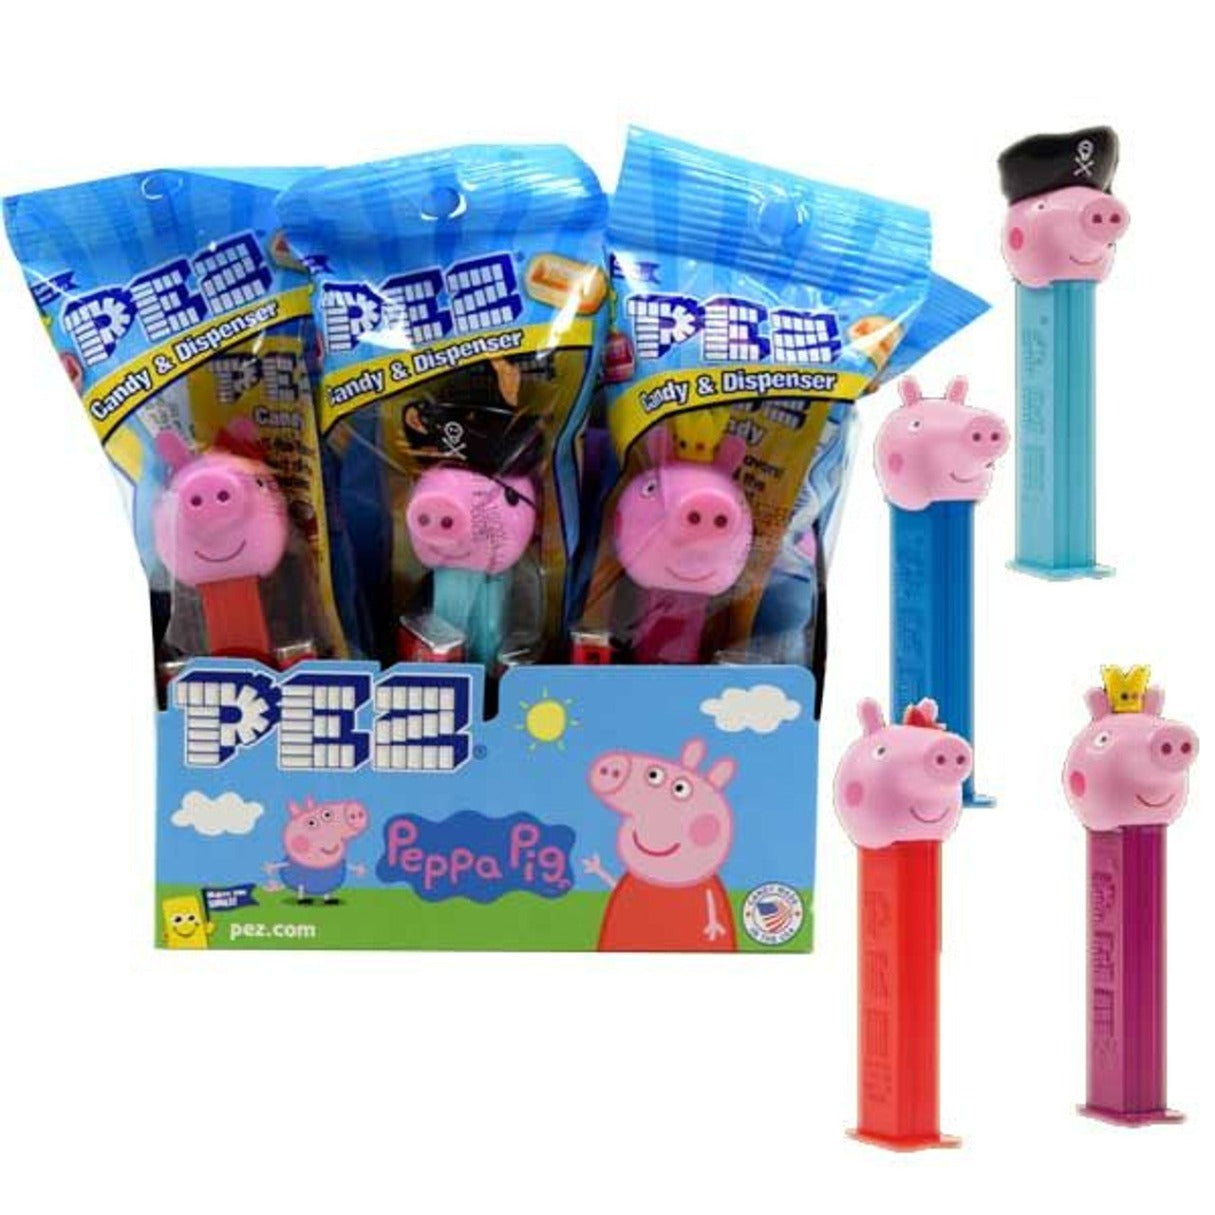 Pez Peppa Pig .58oz - 12ct